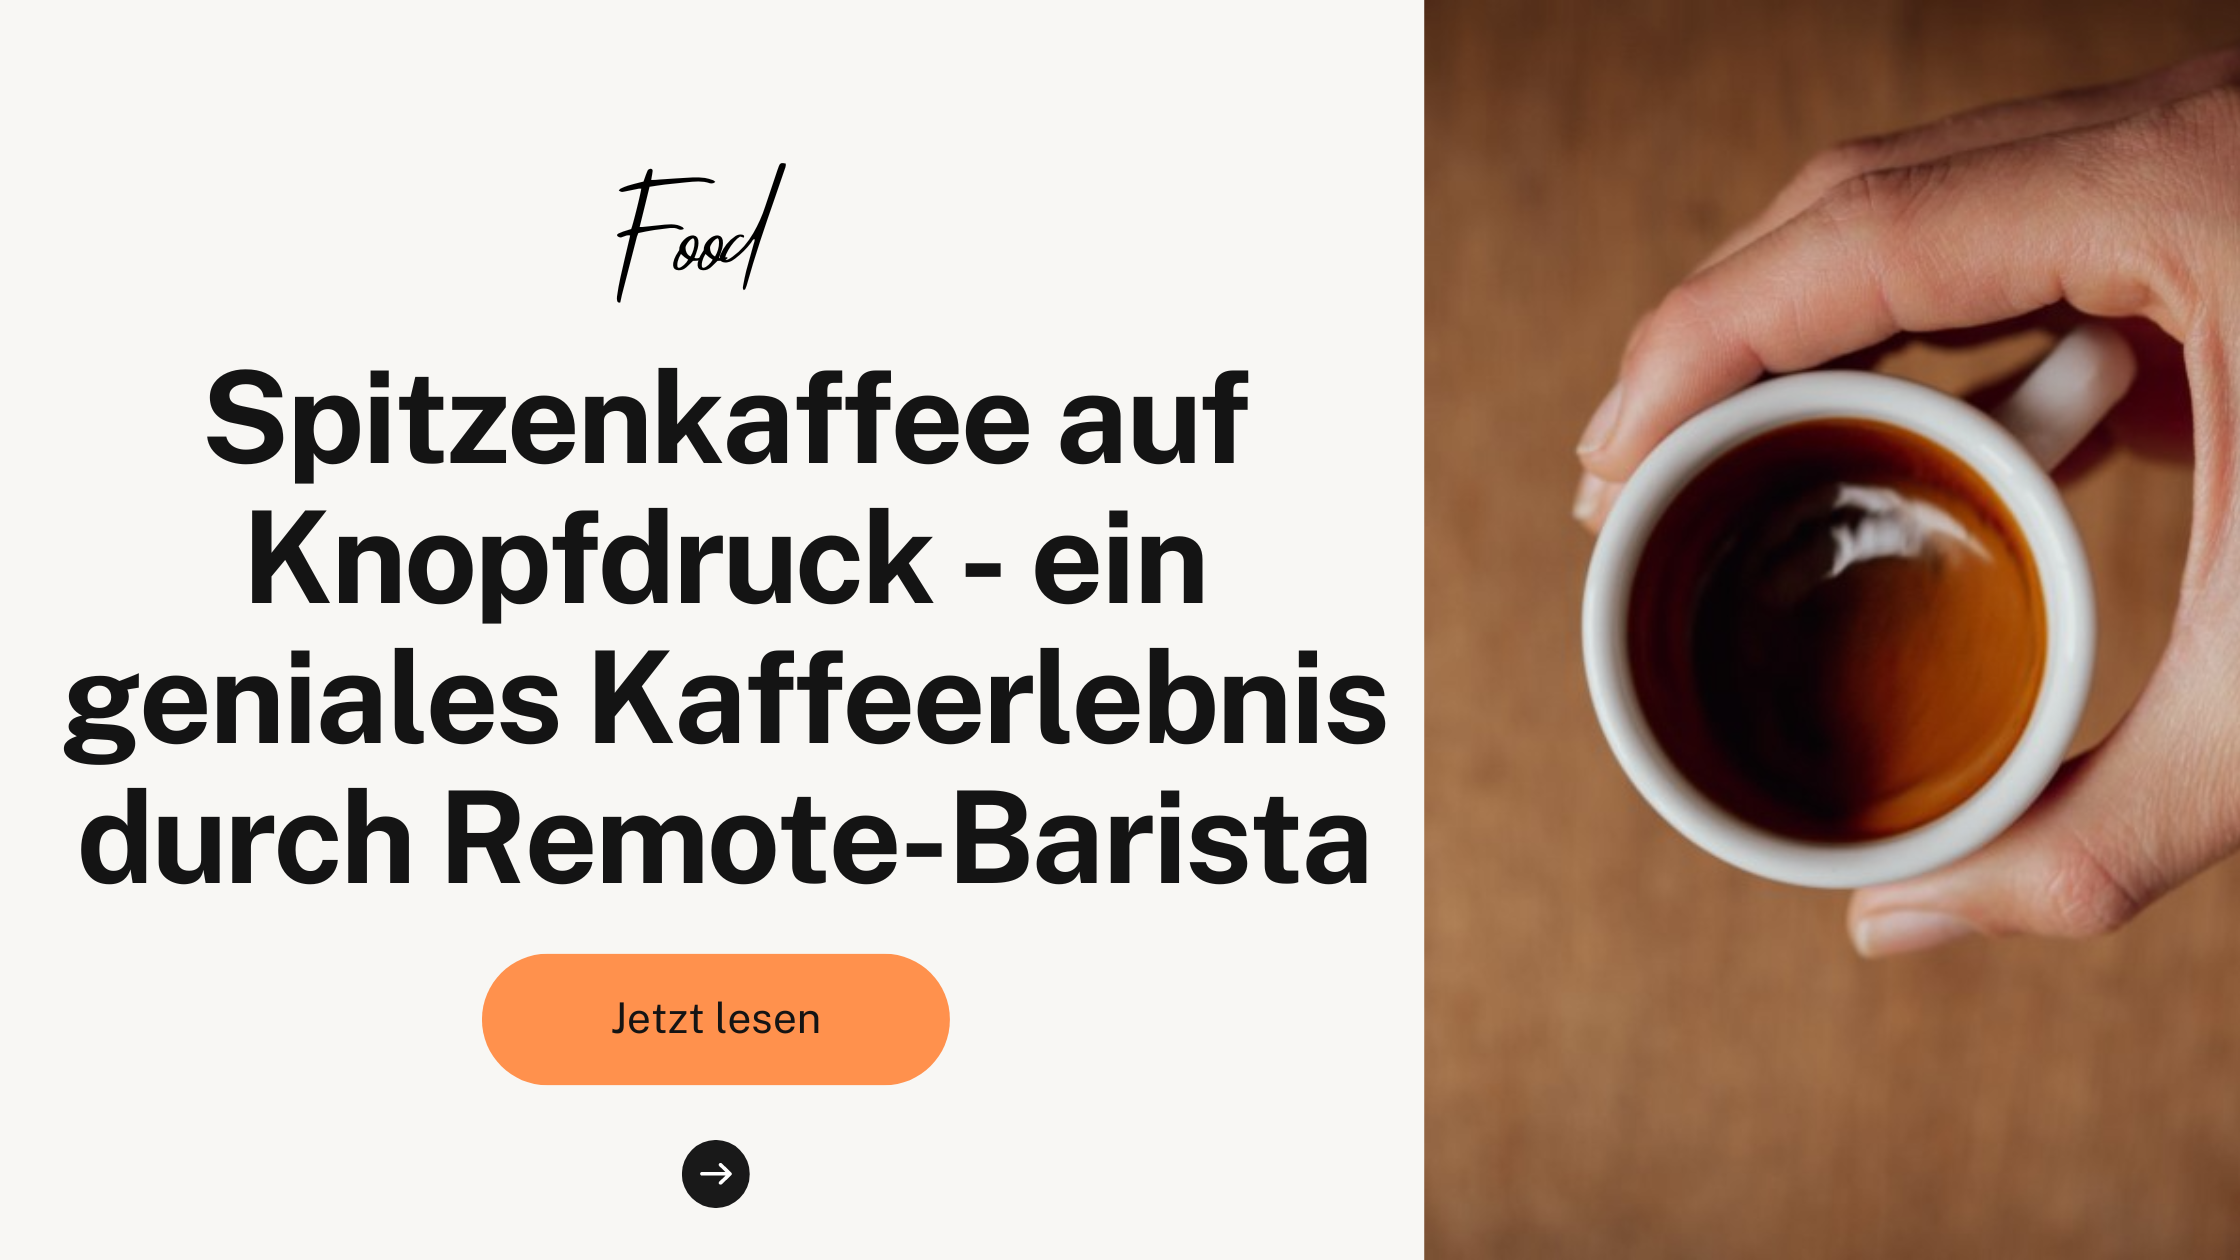 Spitzenkaffee auf Knopfdruck - ein geniales Kaffeerlebnis durch Remote-Barista